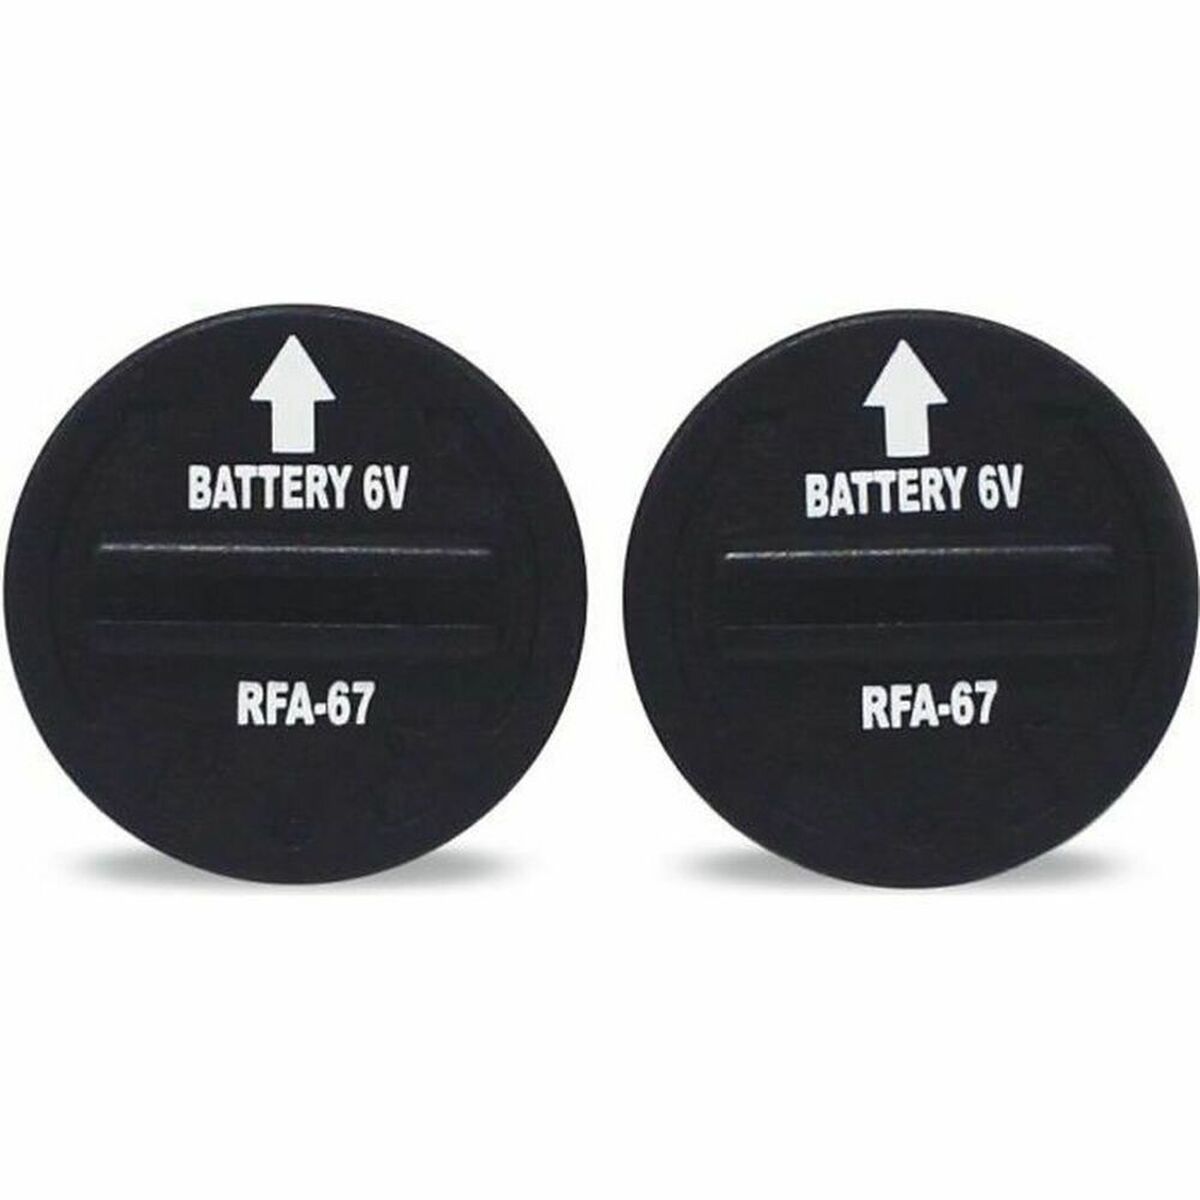 Batterijen PetSafe RFA-67 6V